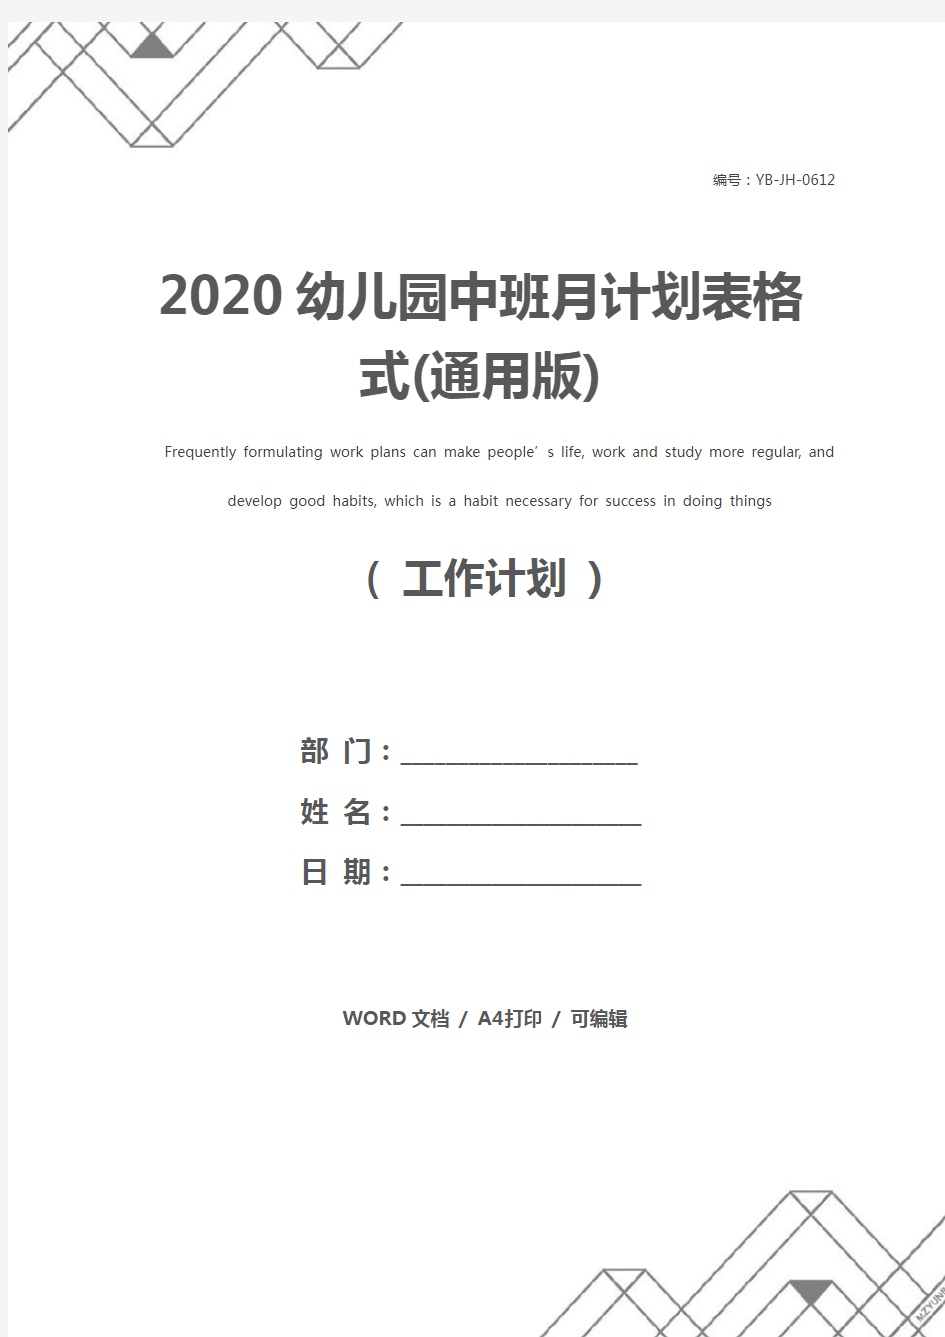 2020幼儿园中班月计划表格式(通用版)